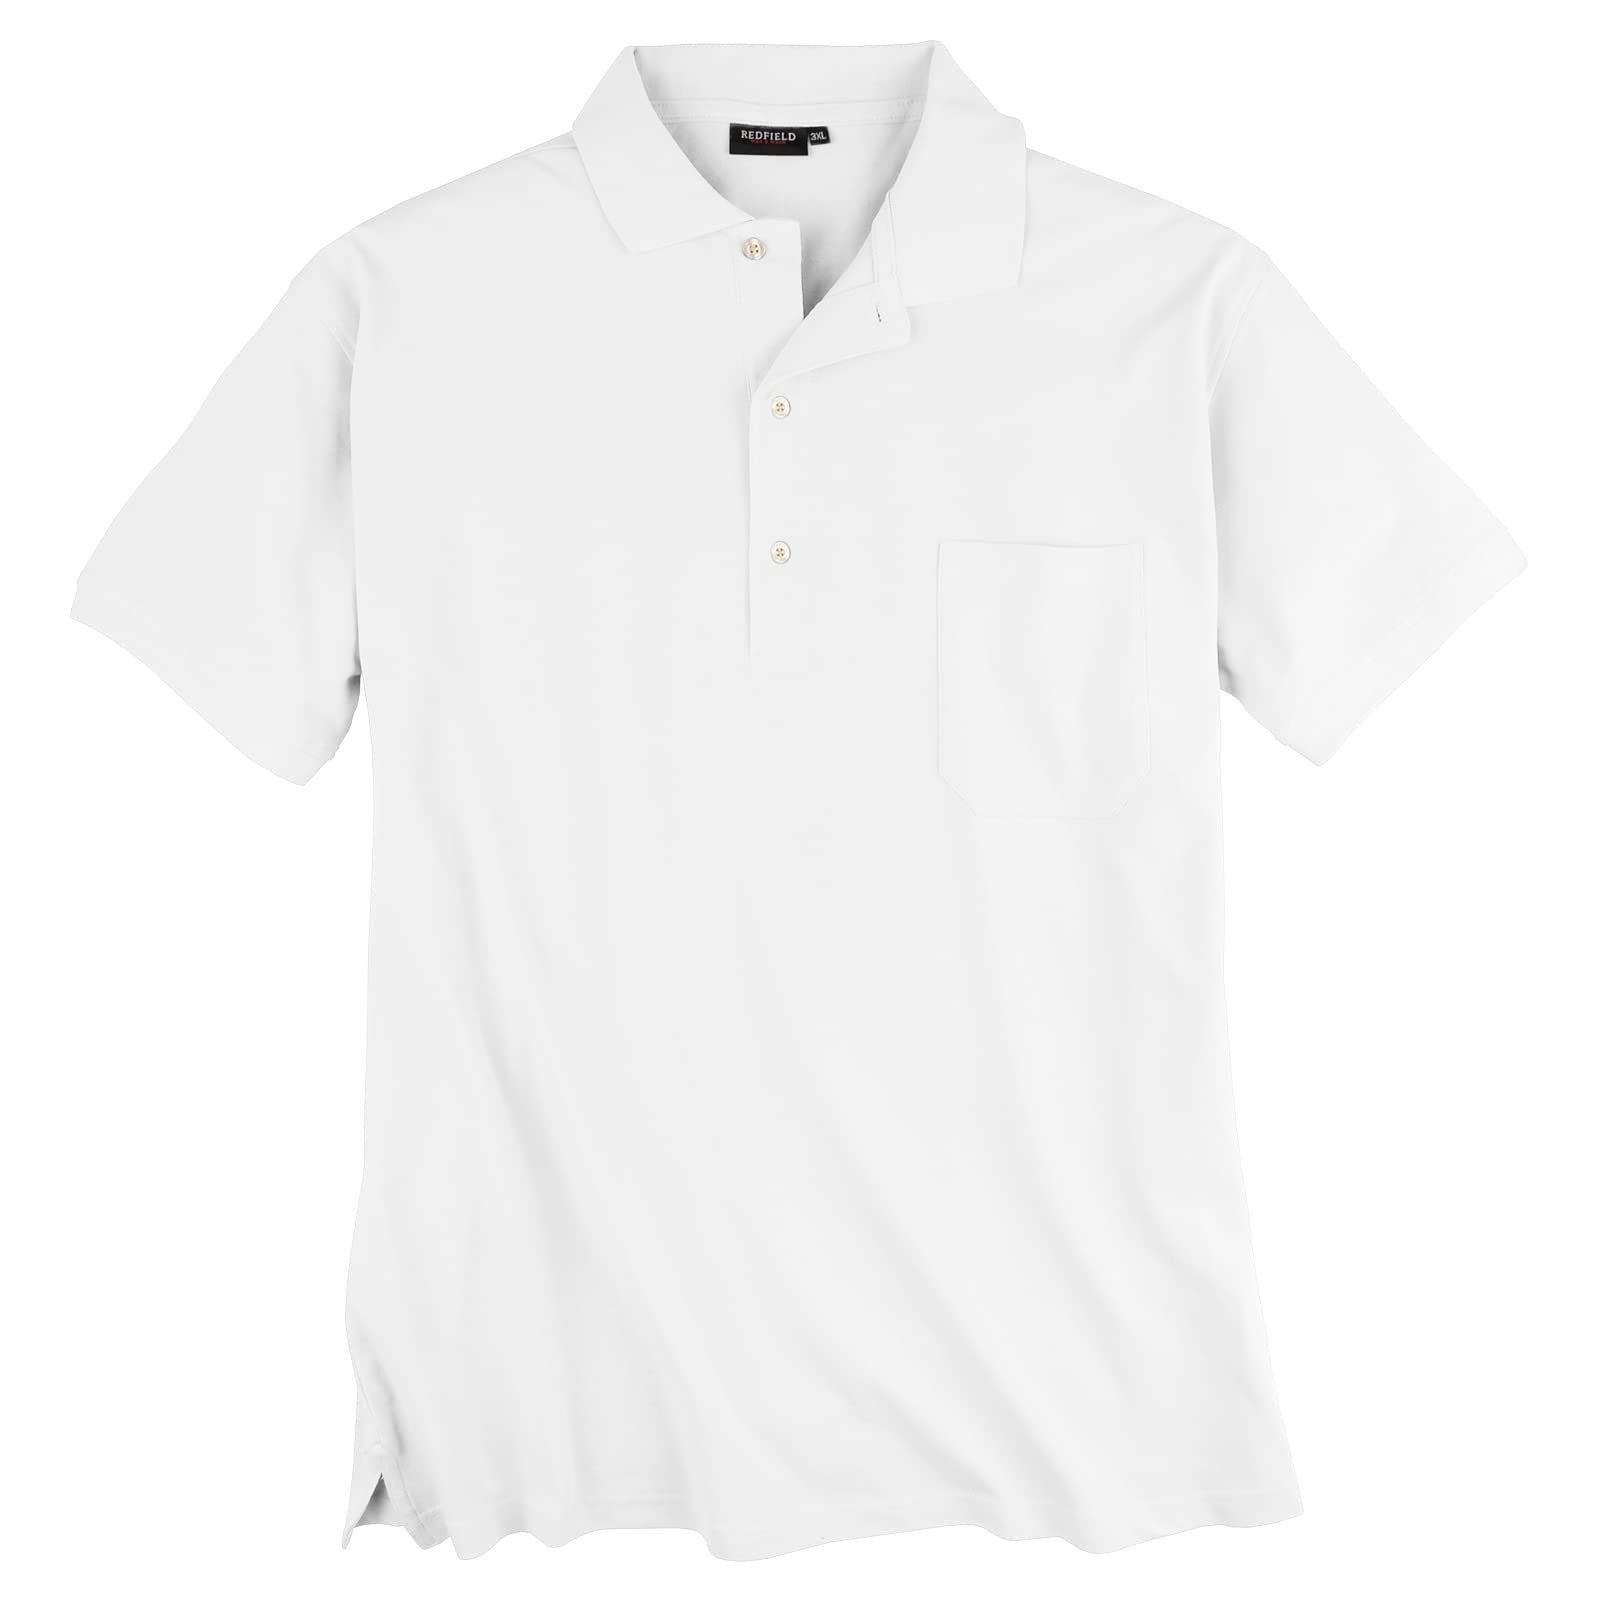 Redfield Poloshirt Pique Übergröße weiß, XL Größe:6XL